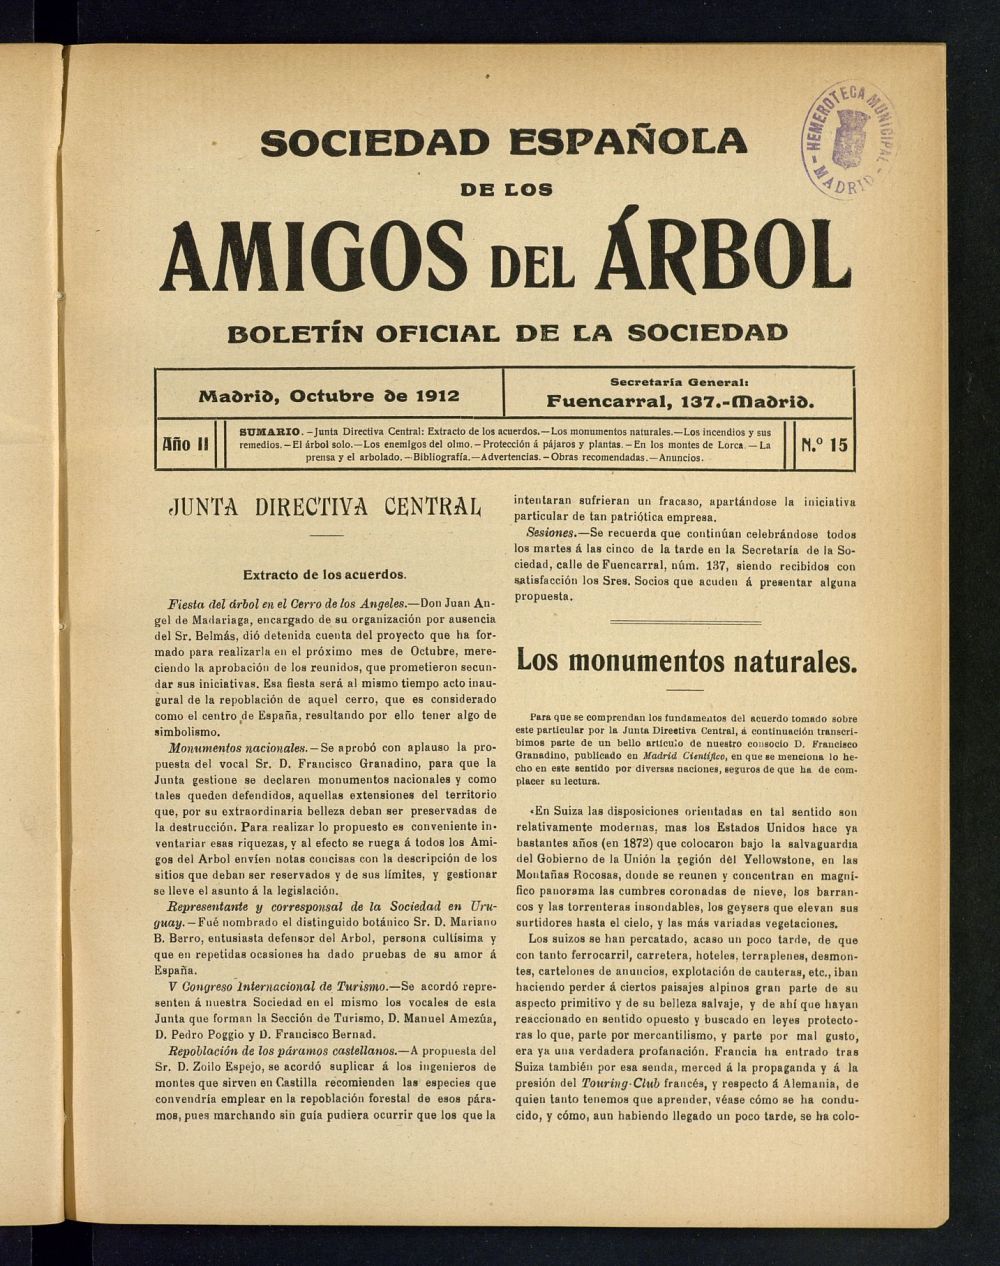 Boletn Comisin organizadora de la Sociedad Espaola de los amigos del rbol de octubre de 1912